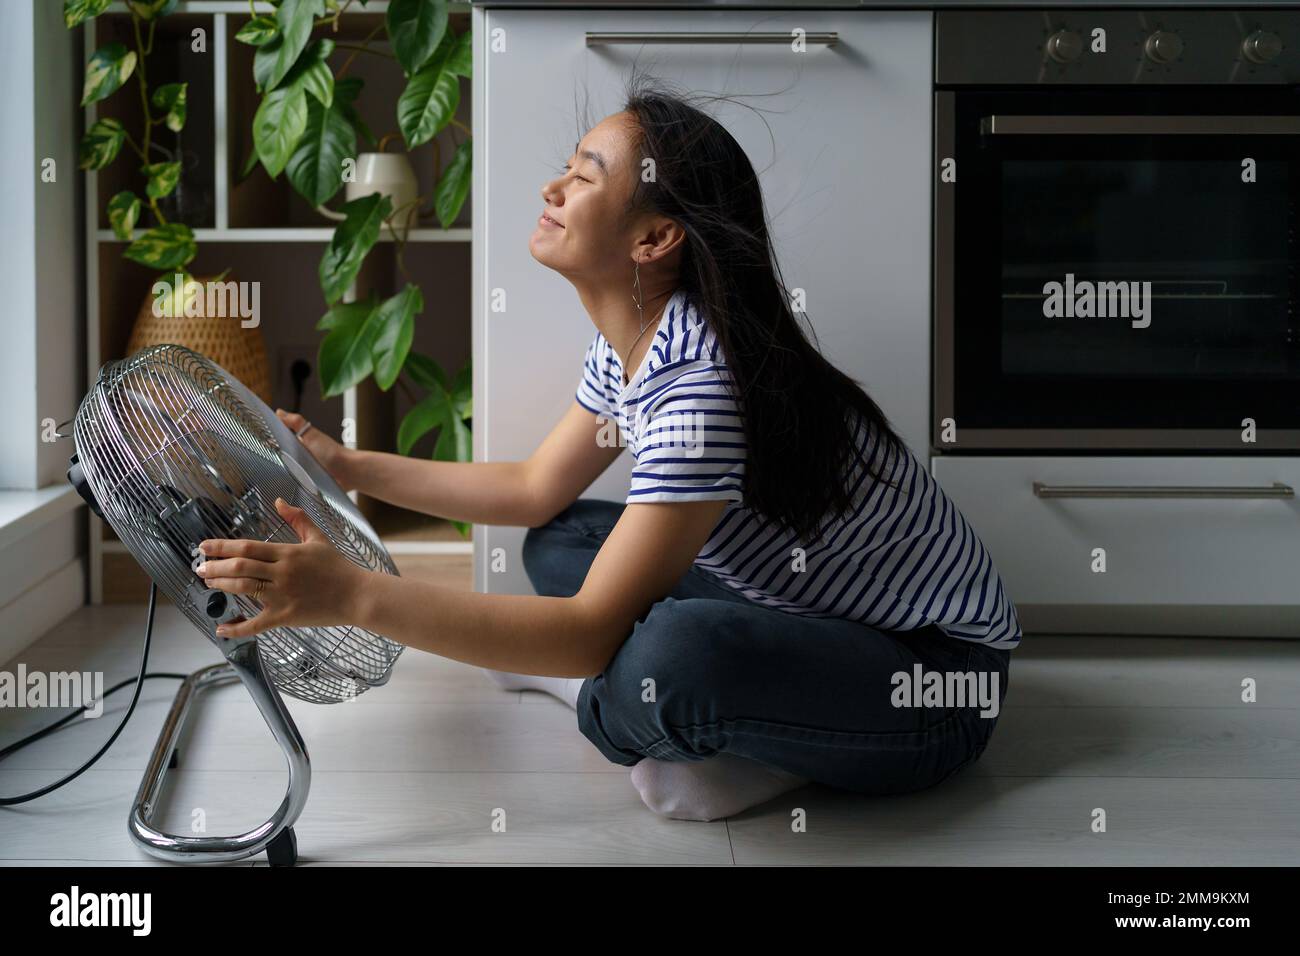 Joyeuse positive asiatique fille aime le vent froid du ventilateur électrique se trouve sur le sol dans la cuisine de la maison Banque D'Images